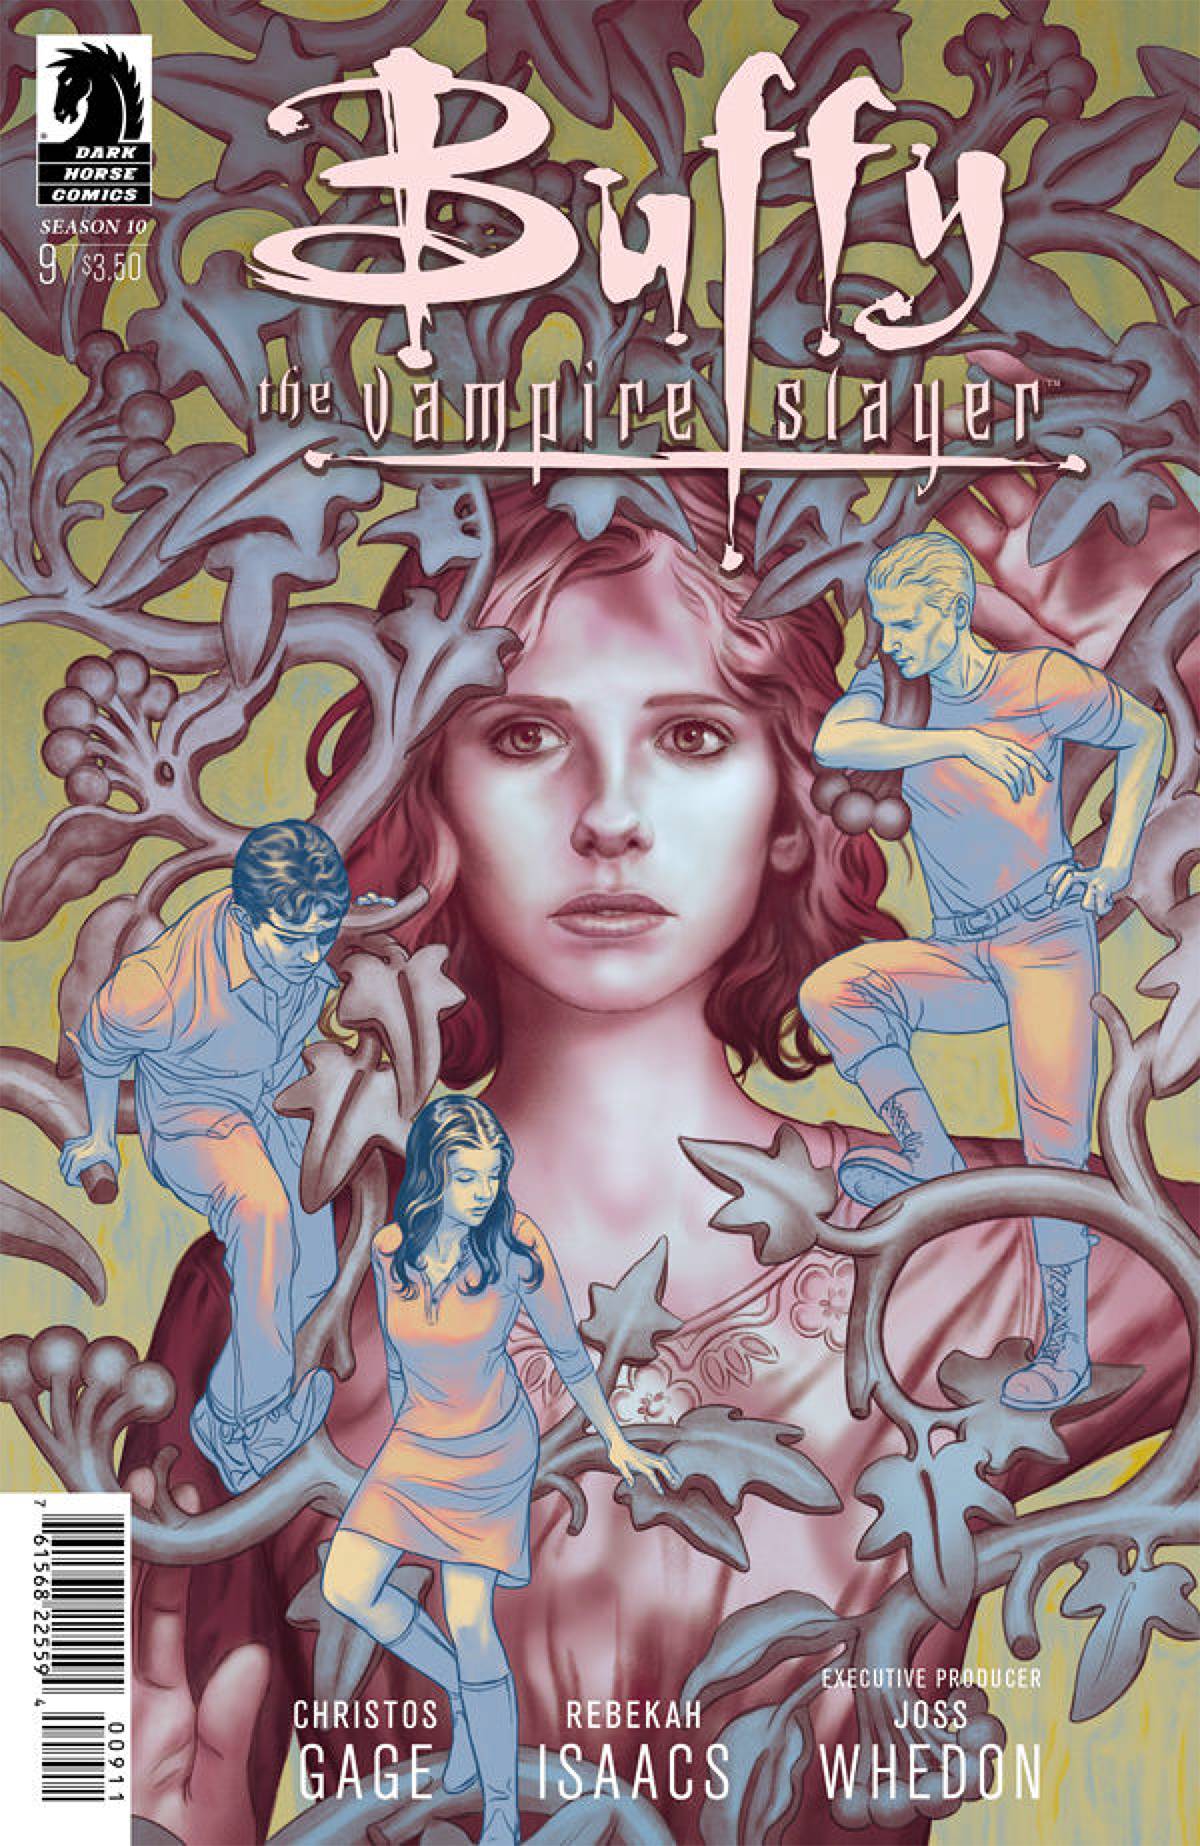 Buffy the Vampire Slayer Season 10 #9 Main Cover